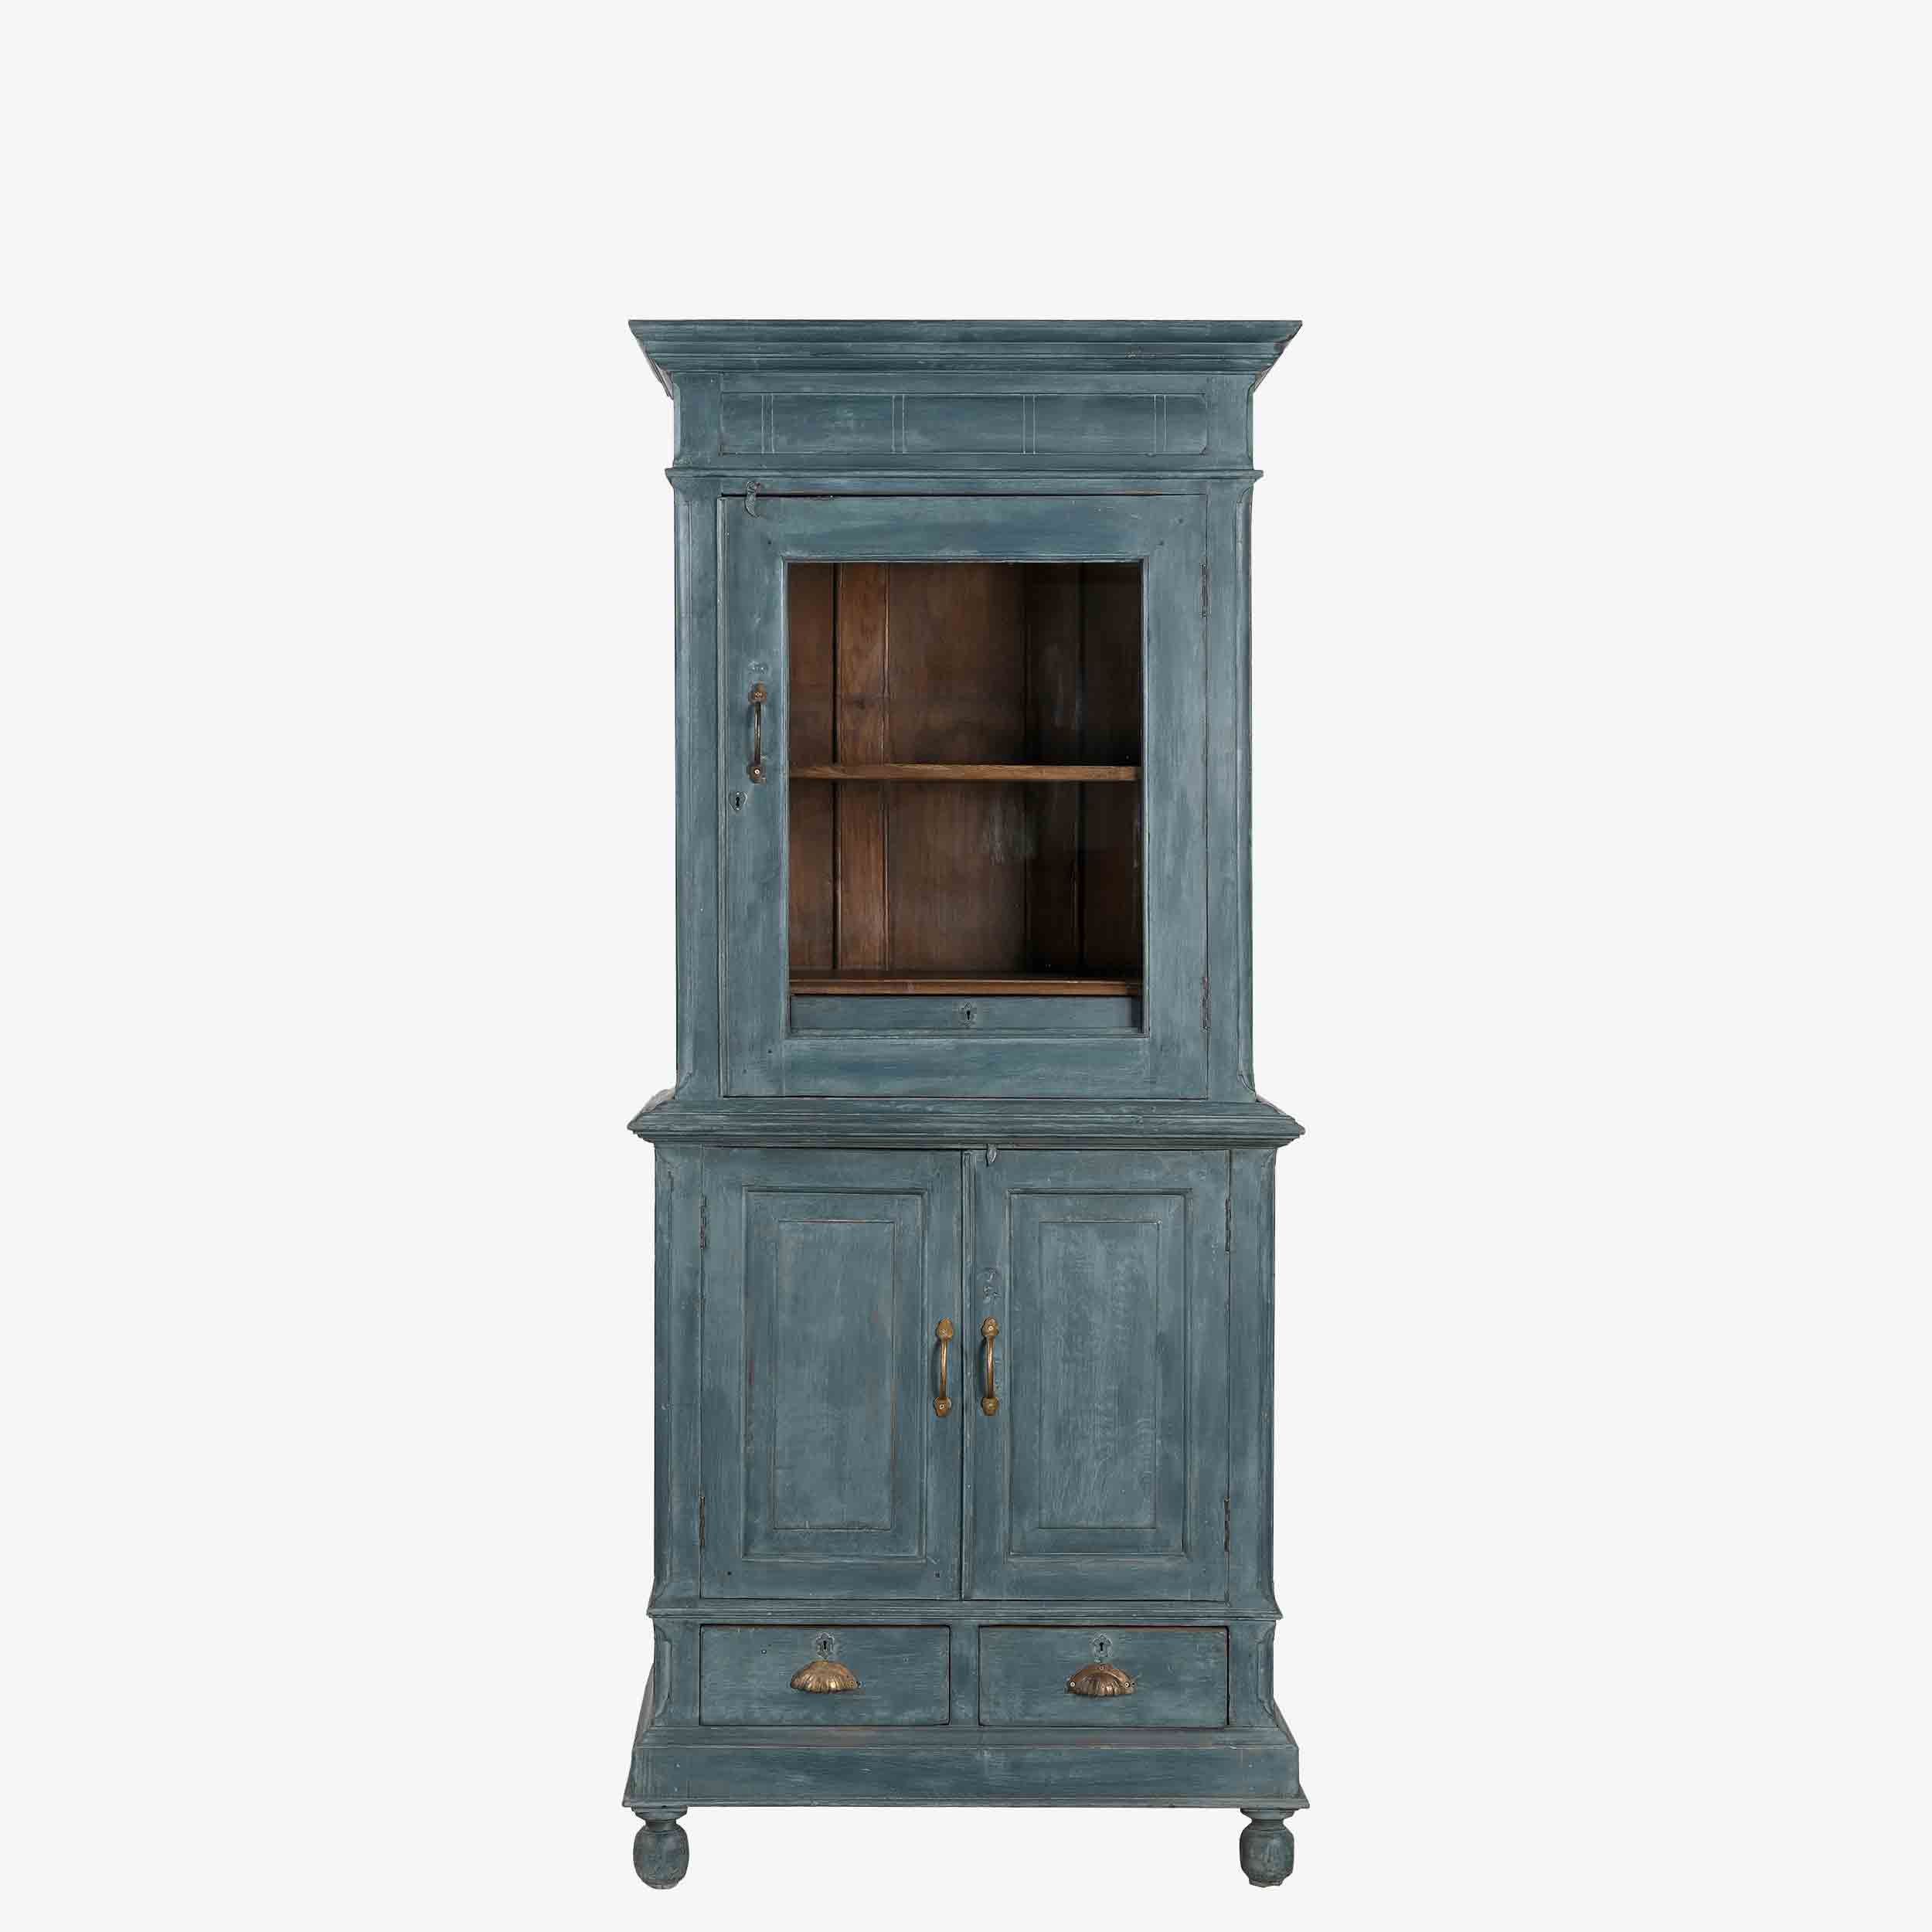 The Derran Antique Display Dresser in Baltimore Blue